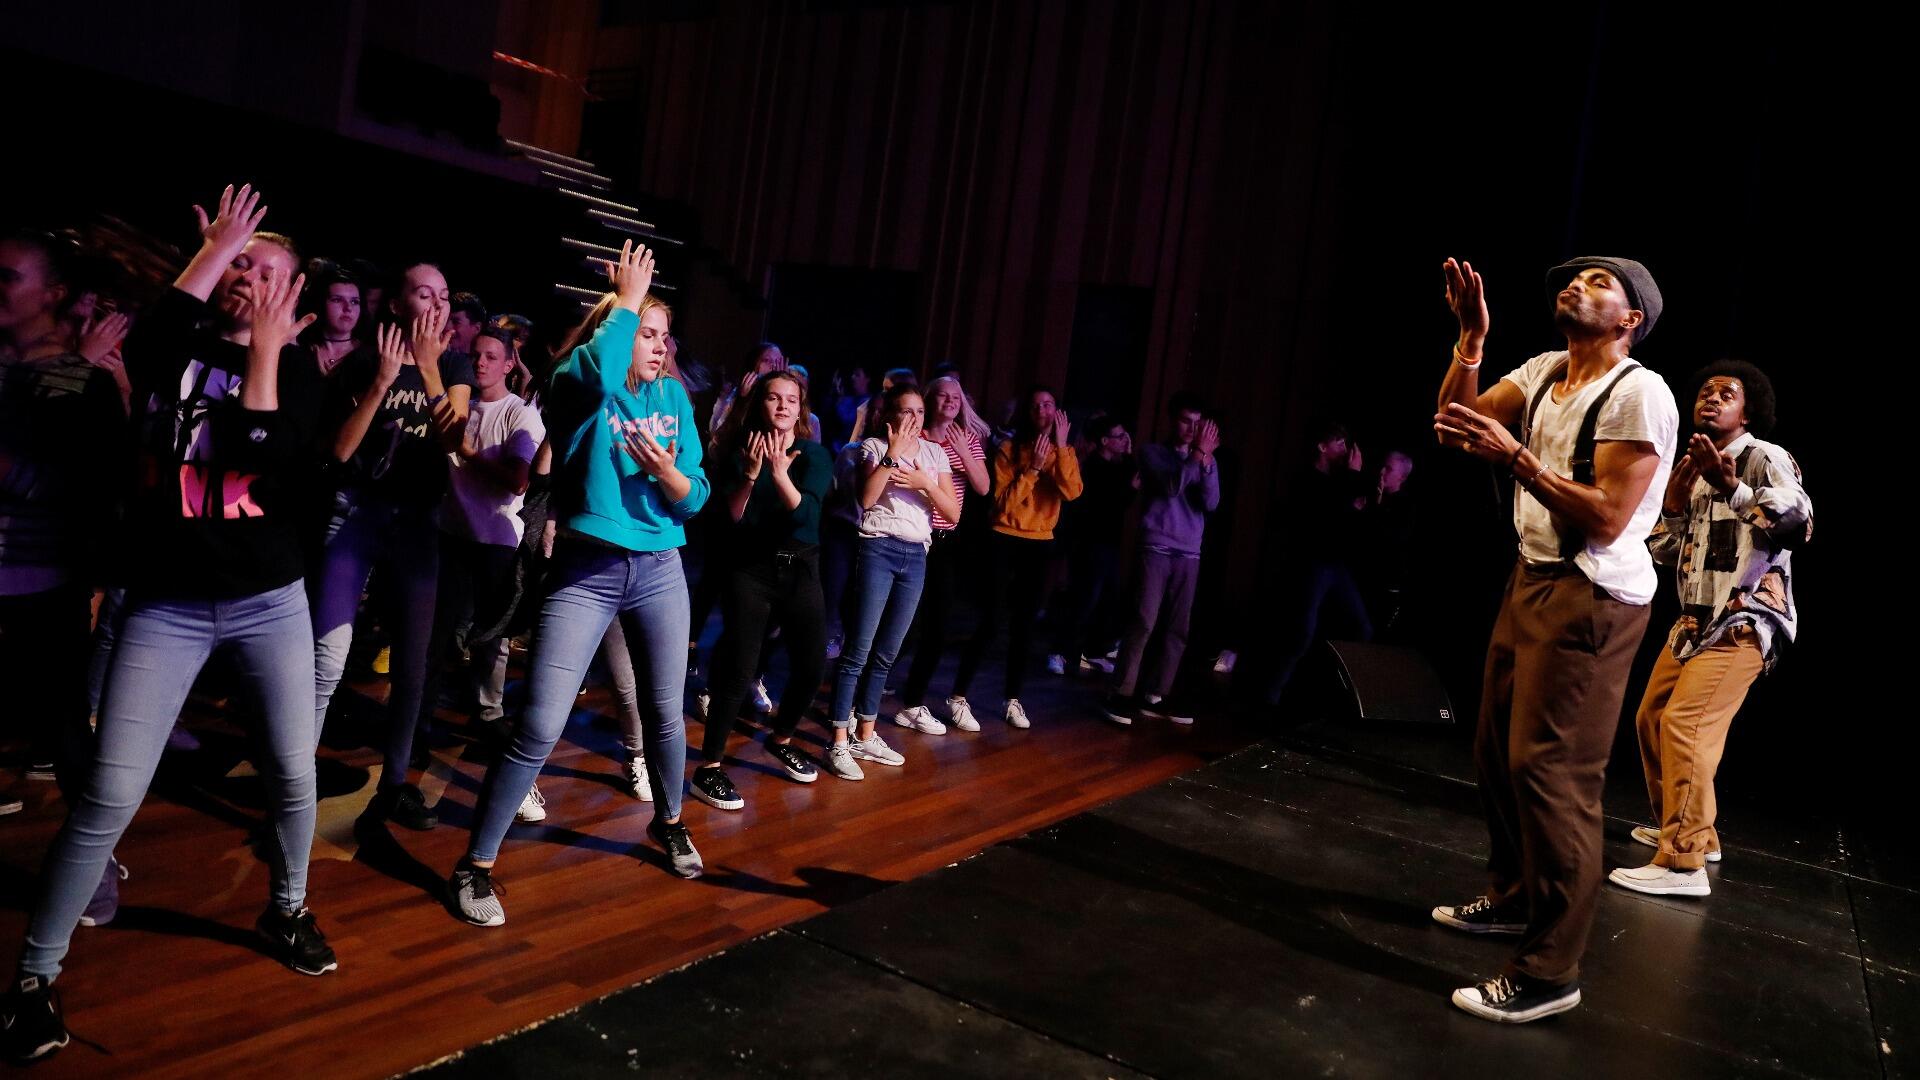 Leerlingen van een bassischool in Dordrecht krijgen een dansworkshop van professionele dansers bij Kunstmin